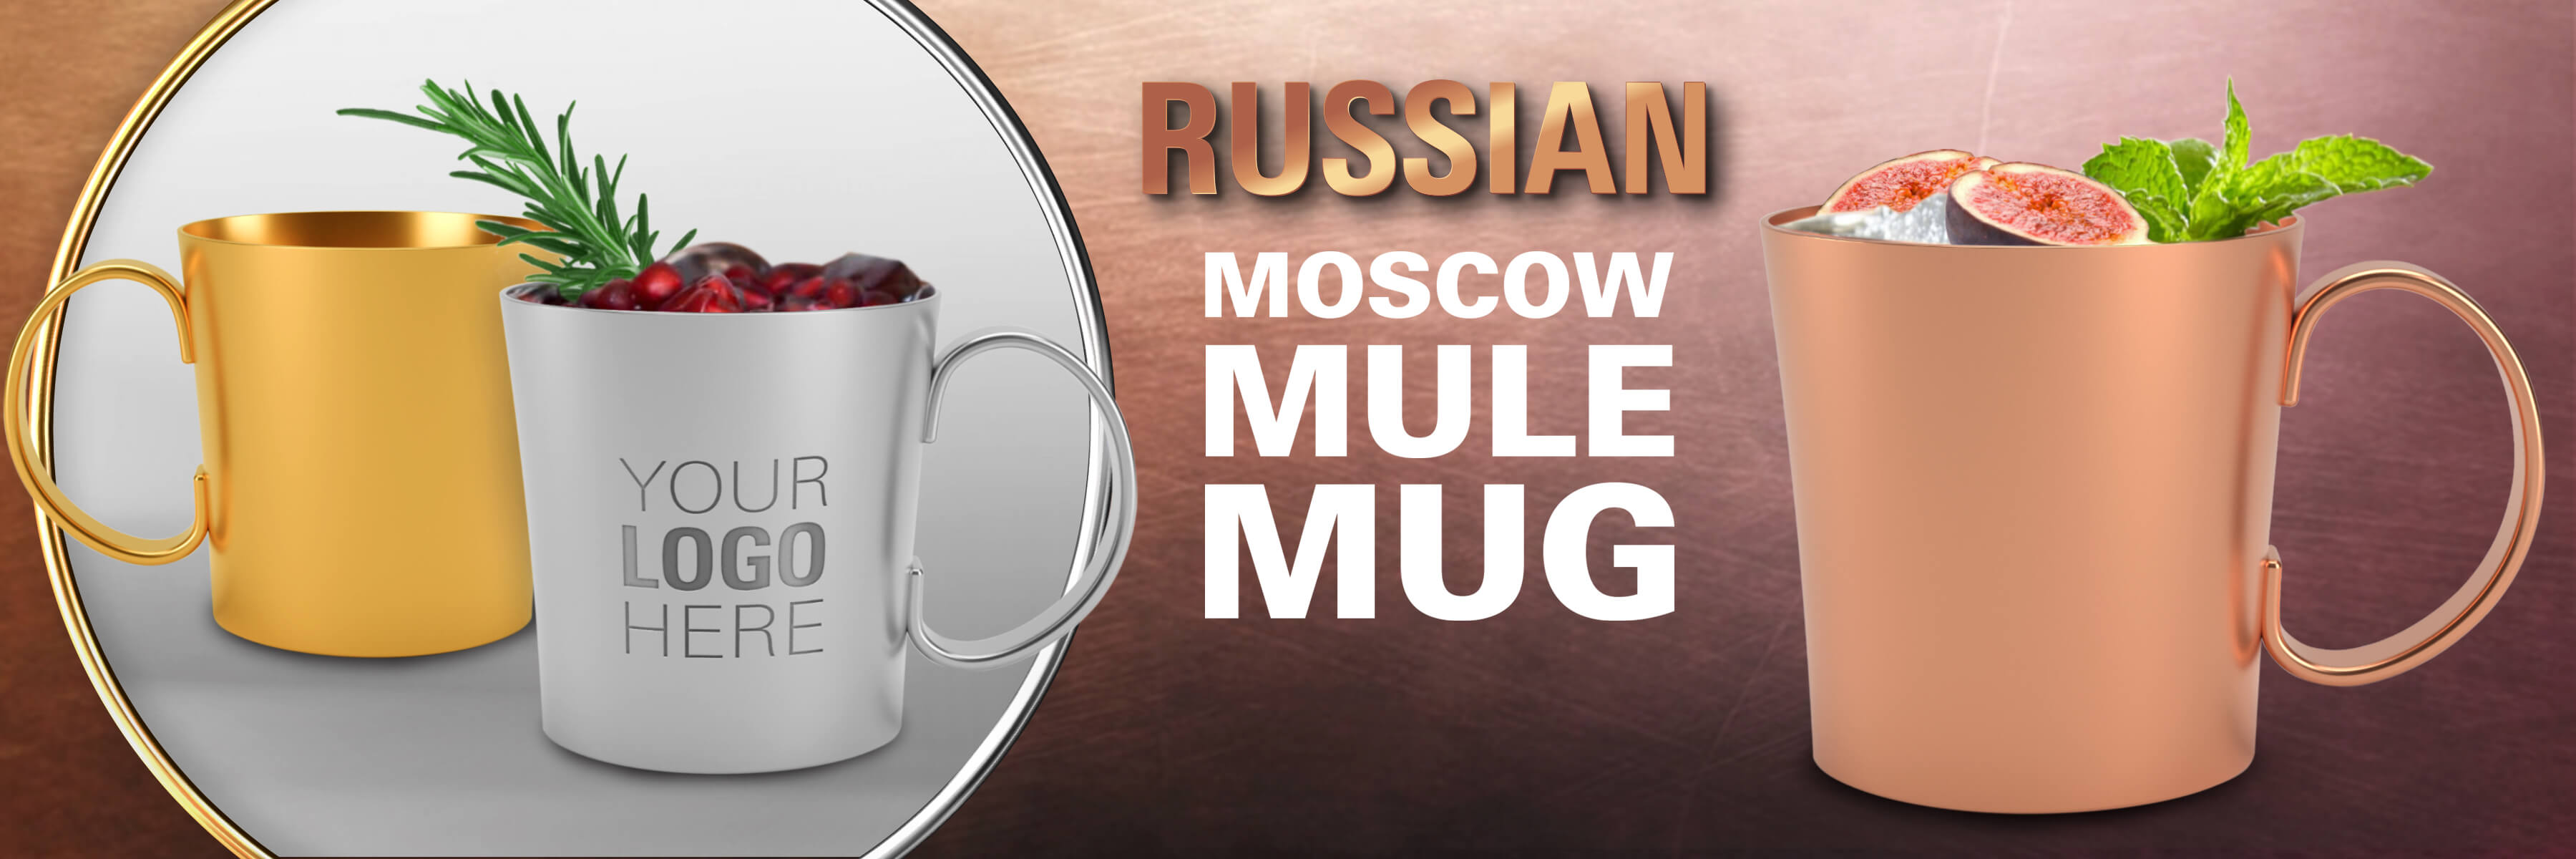 russian mule mugs